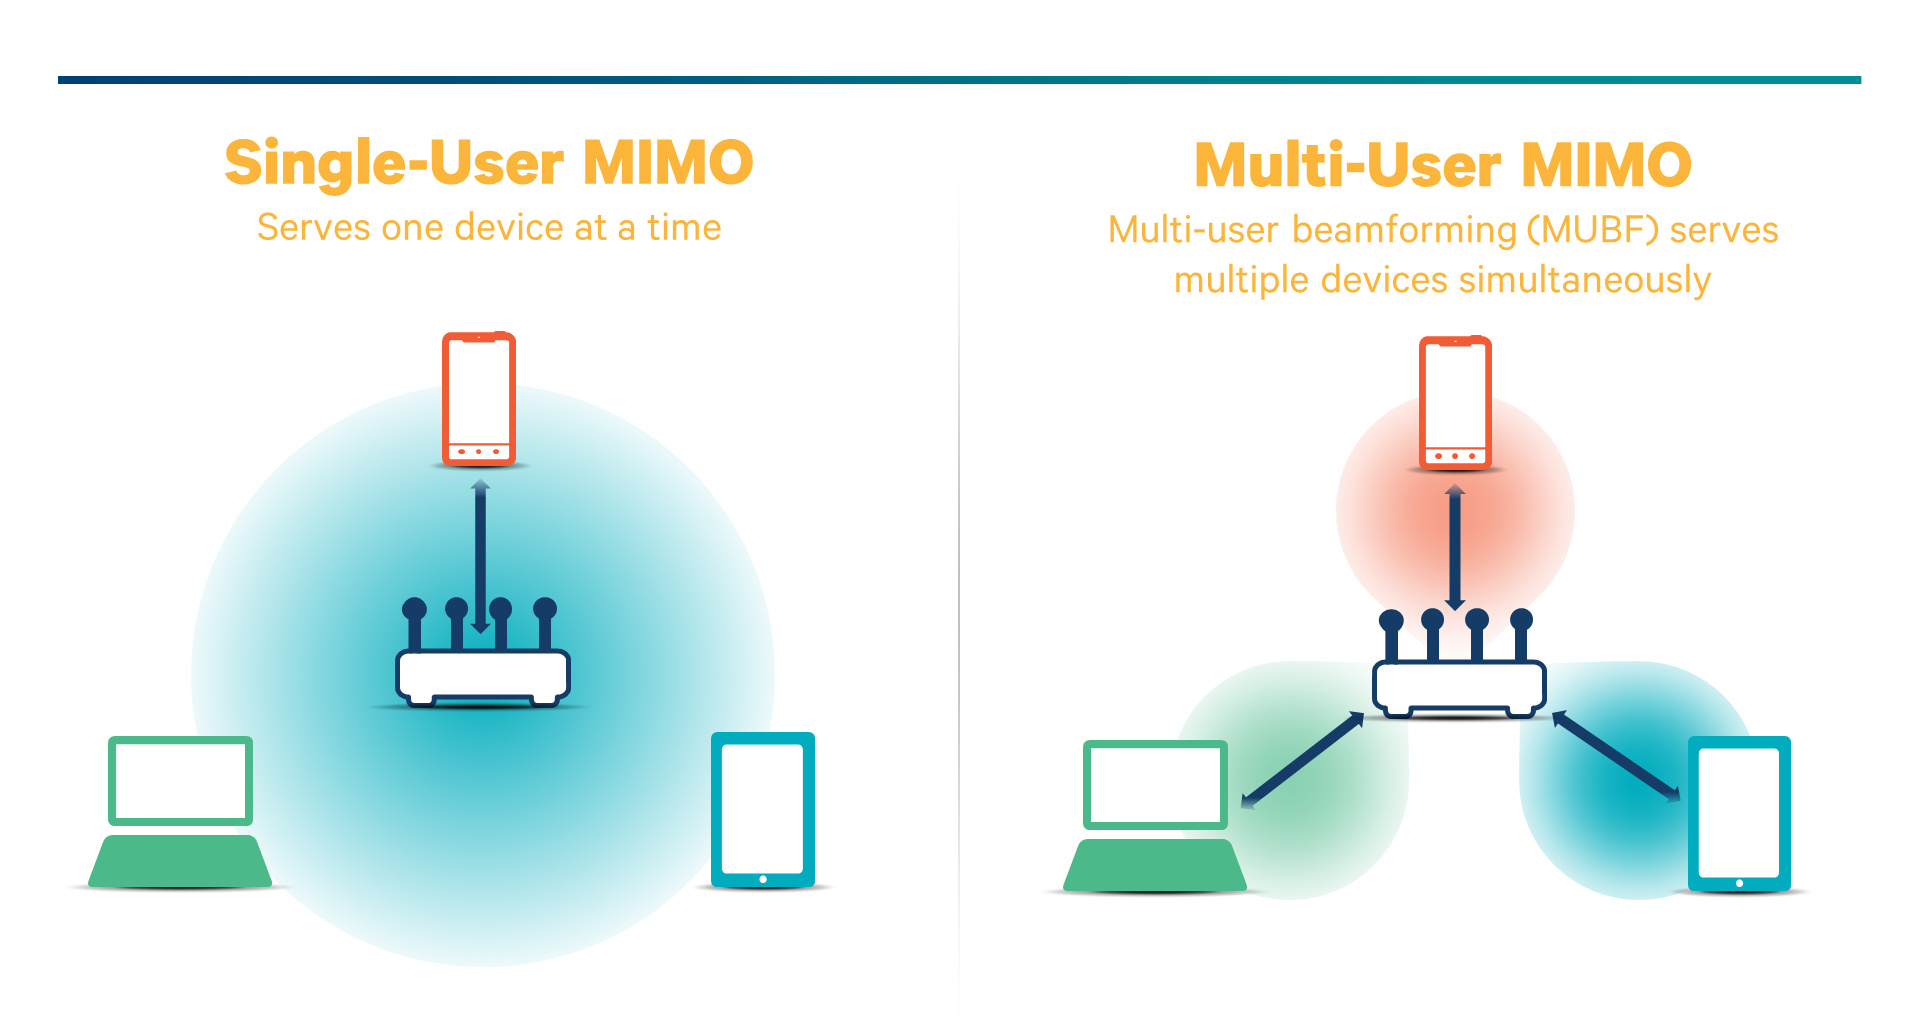 صورة توضح الفرق بين تقنية MU-MIMO وSU-MIMO